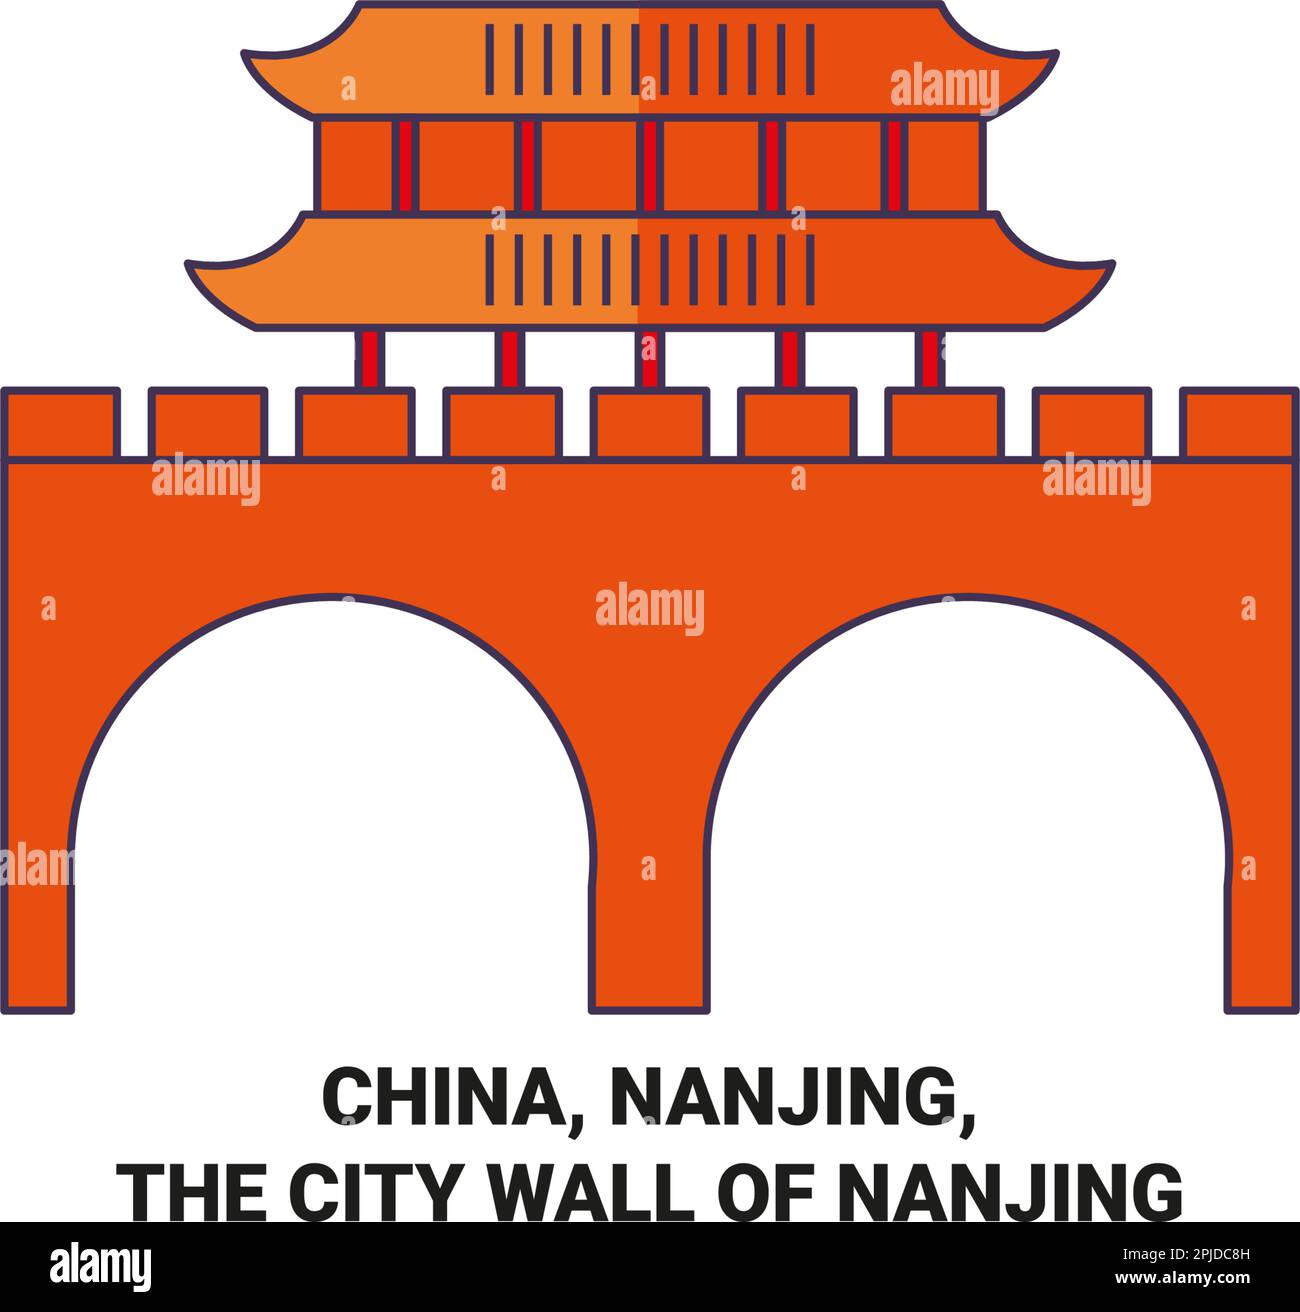 China, Nanjing, The City Wall Of Nanjing travel landmark vector illustration Stock Vector